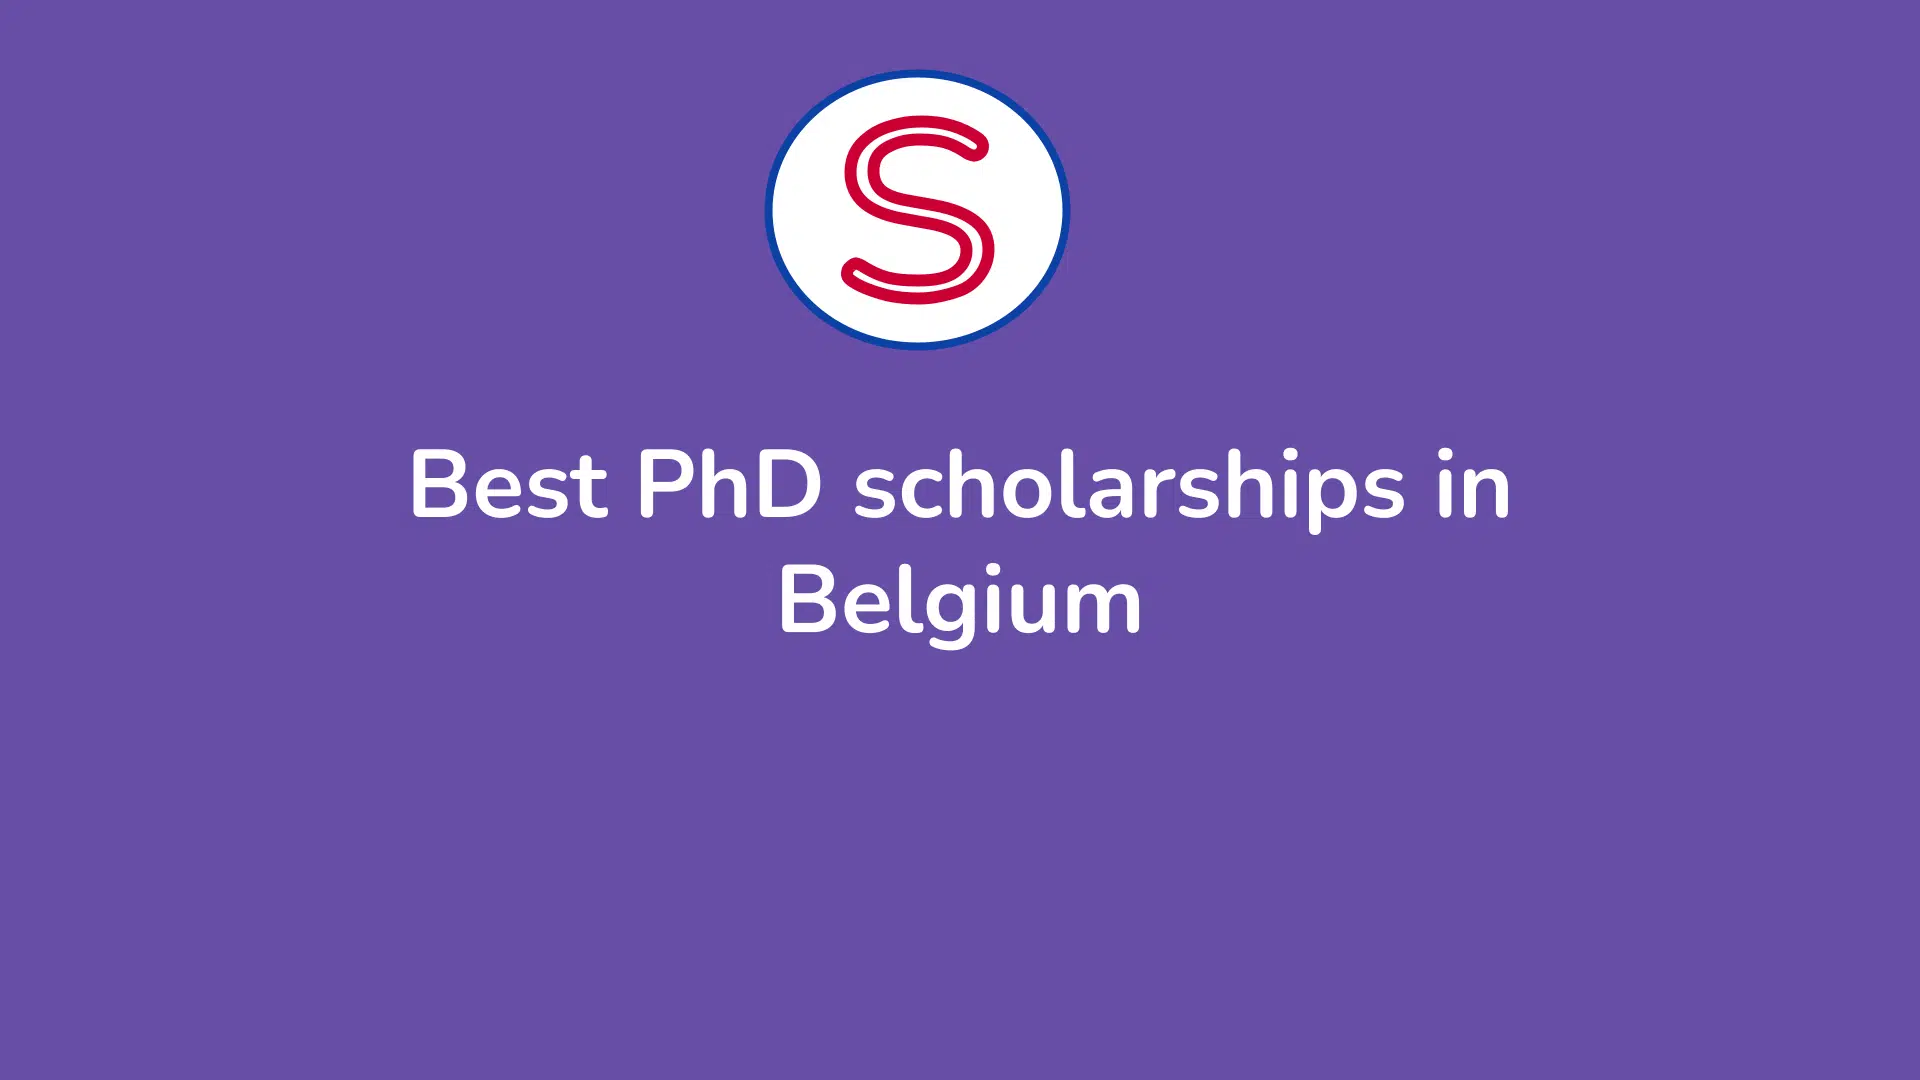 PhD scholarships in Belgium